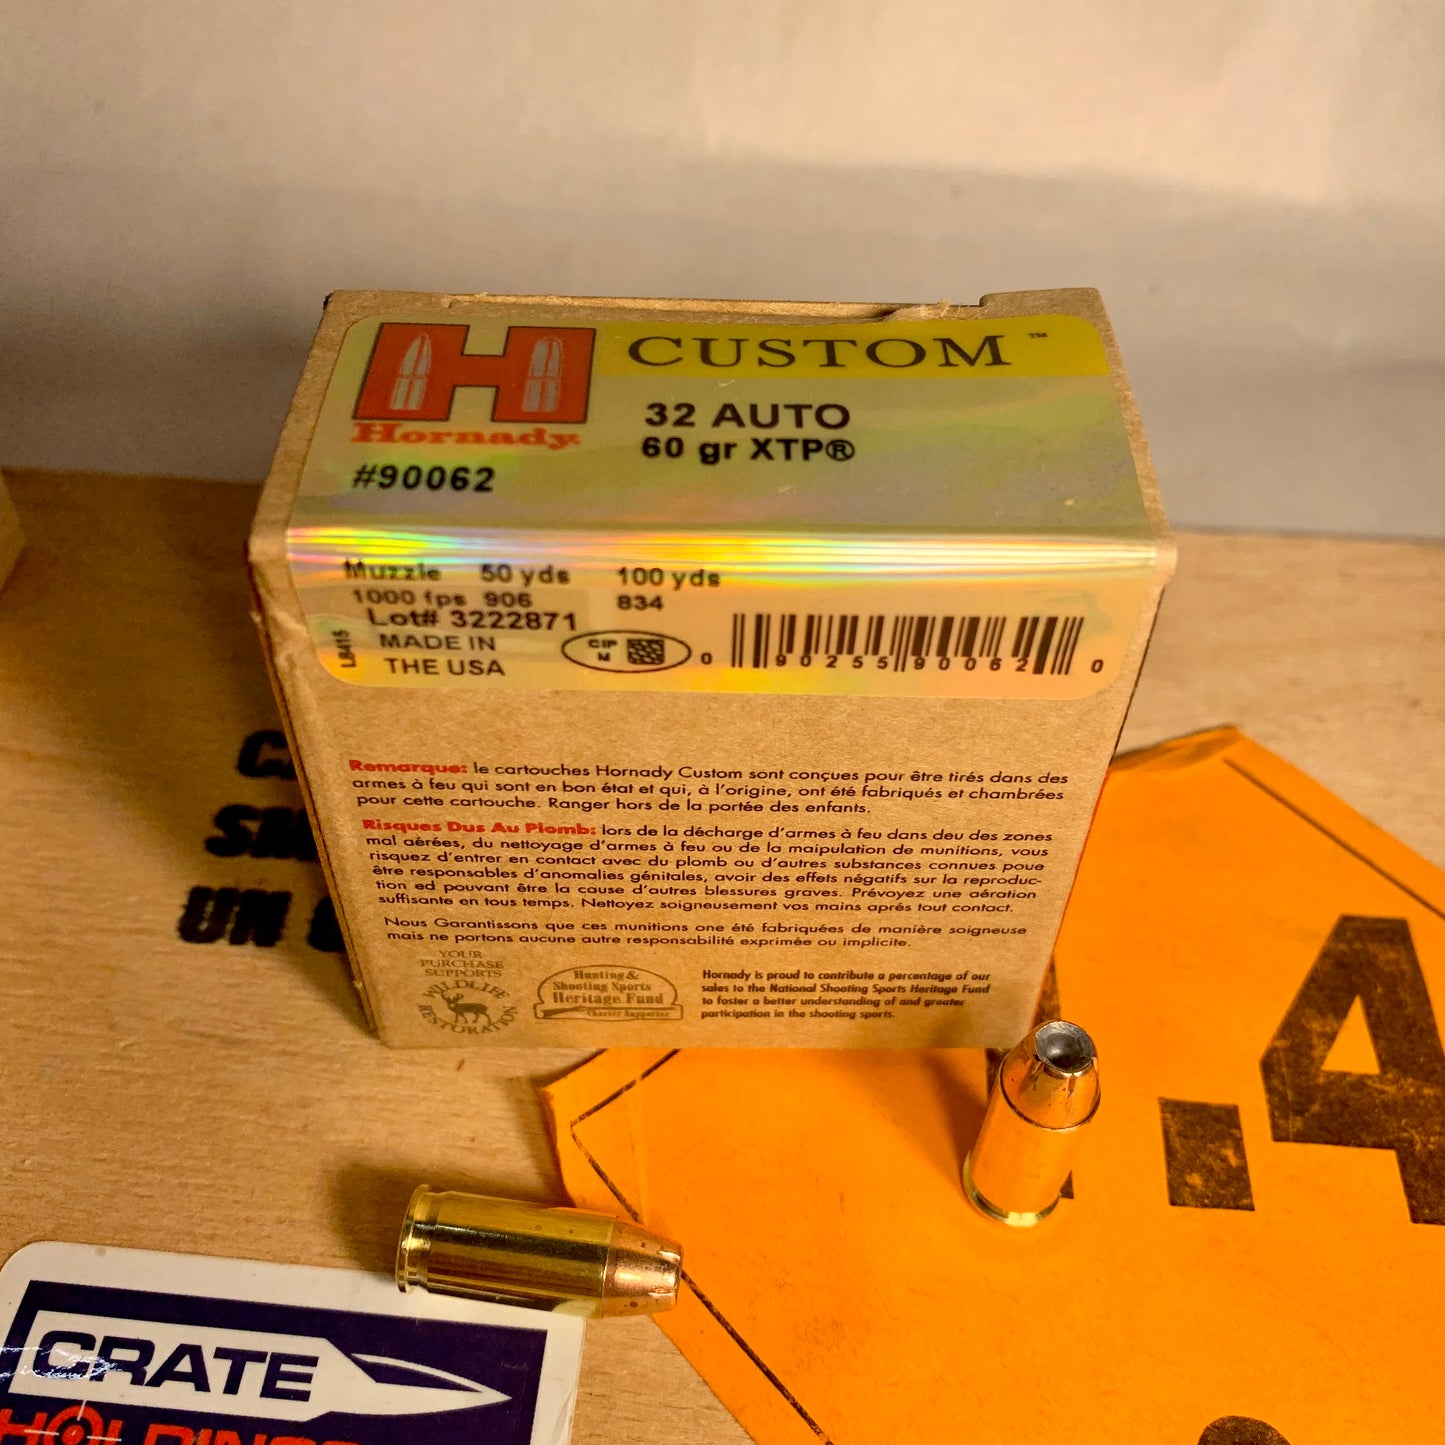 25 Count Box of Hornady Custom .32 ACP / Auto Ammo 60gr XTP JHP - 90062